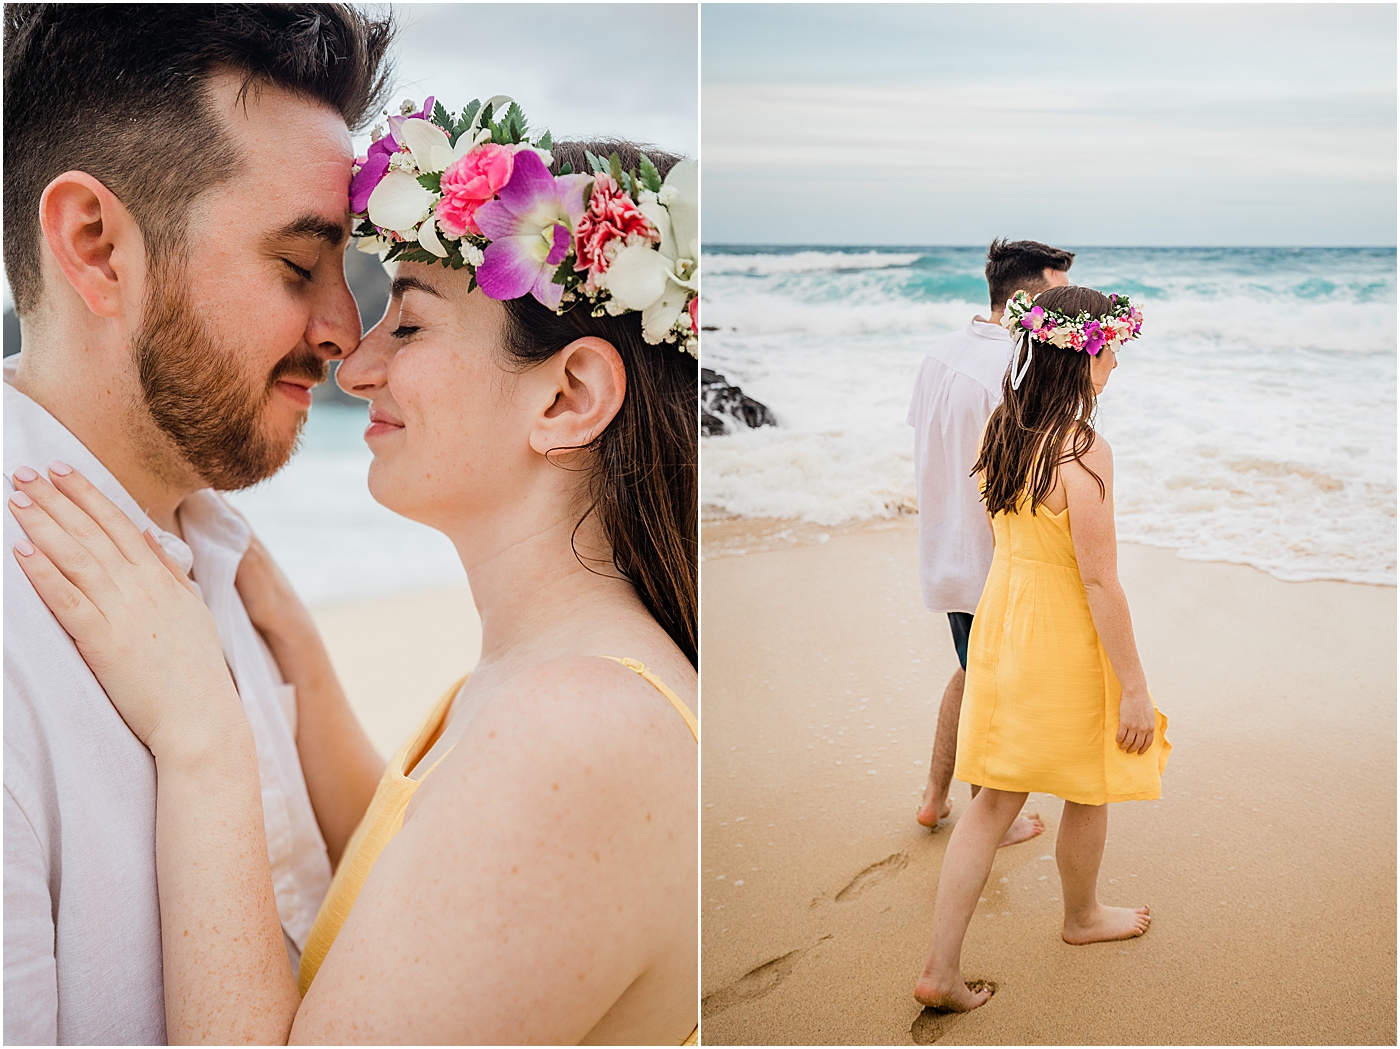 Newlywed photoshoot for honeymoon in hawaii